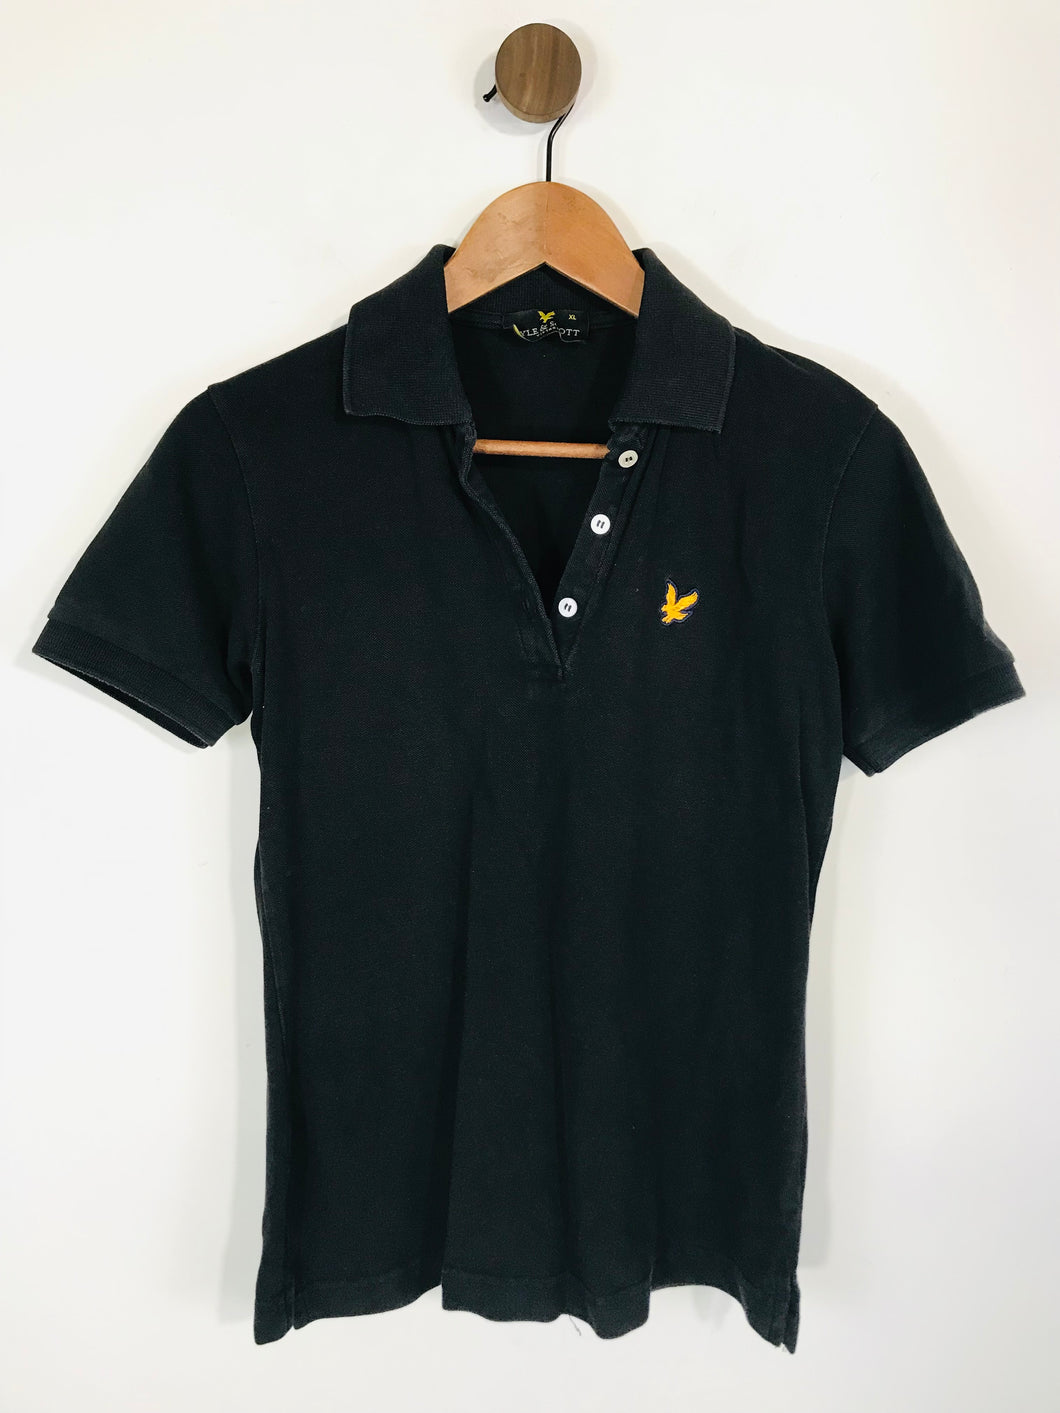 Lyle & Scott Women's Smart Polo Shirt | XL UK16 | Black